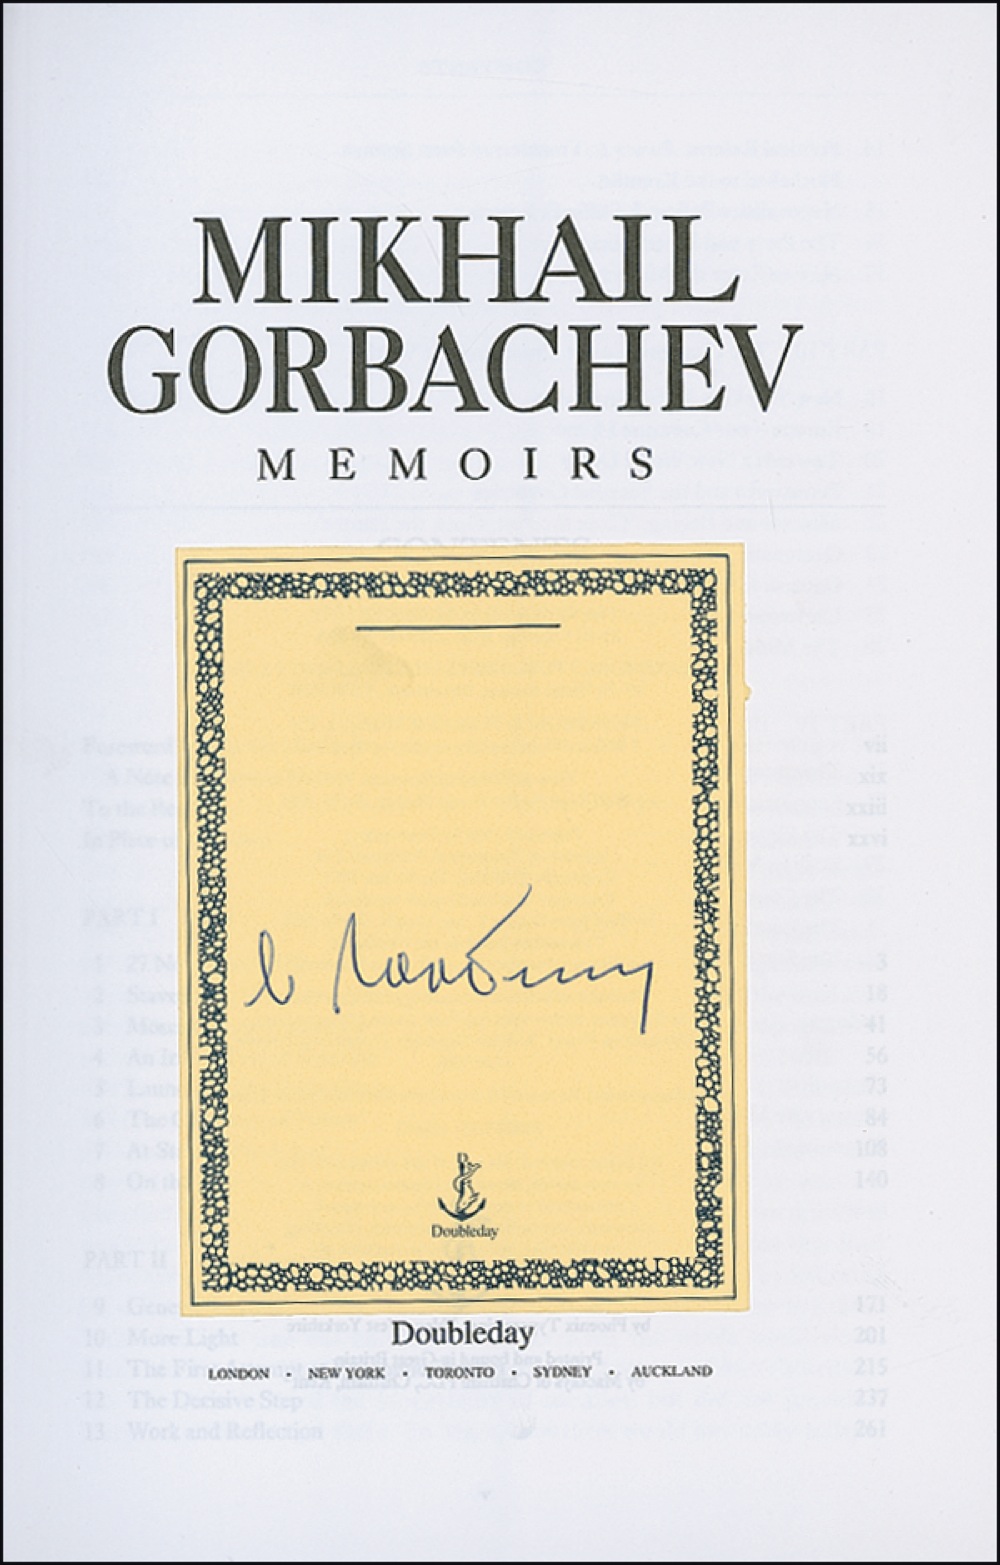 Lot #277 Mikhail Gorbachev